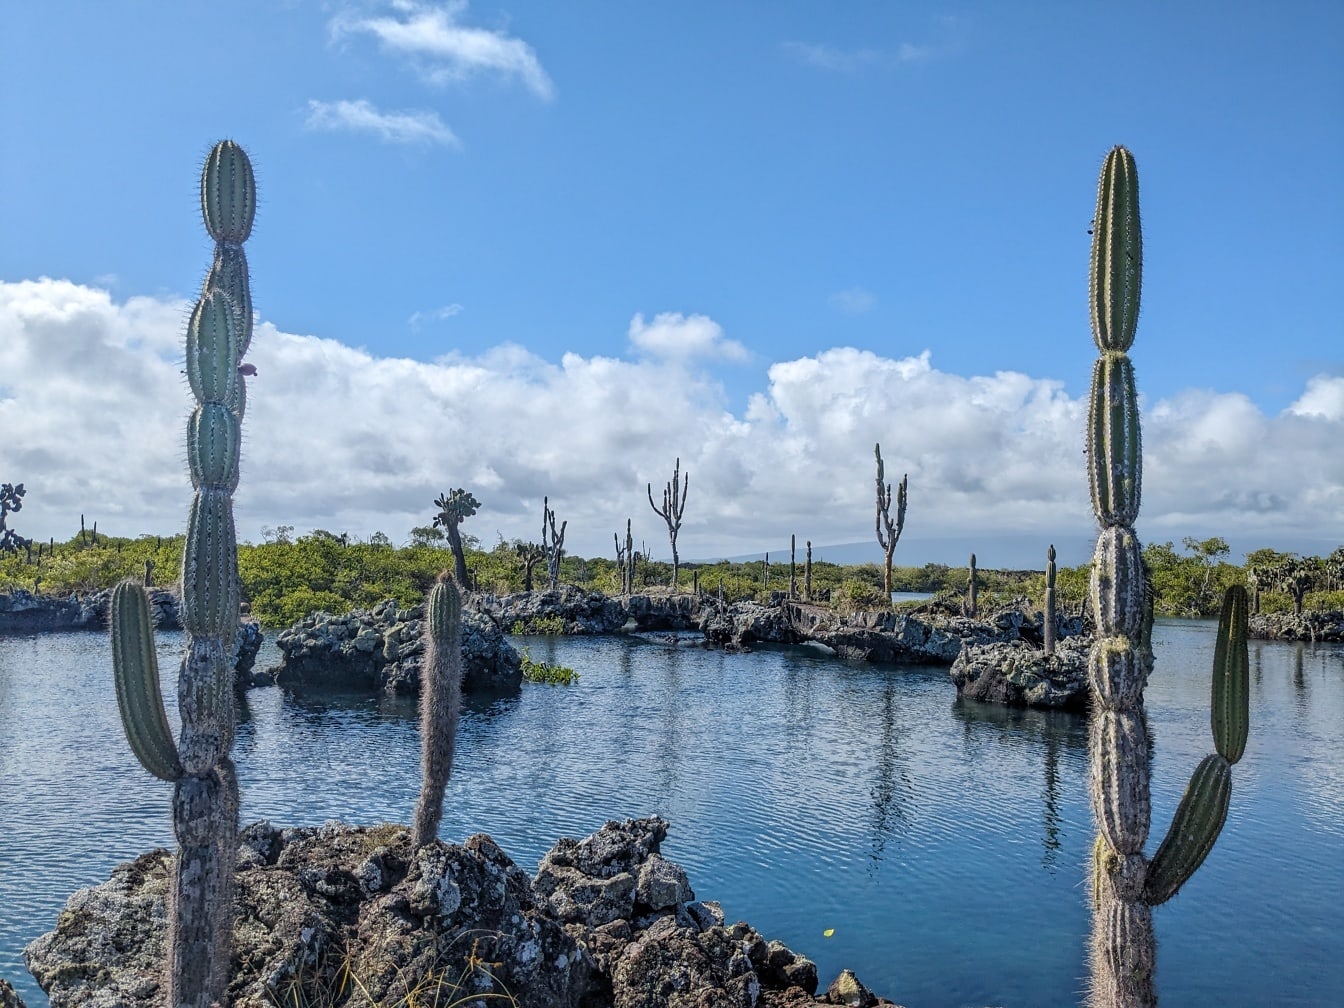 Paisagem majestosa no parque natural de Galápagos com a pera espinhosa (Opuntia galapageia) uma espécie subtropical de cacto